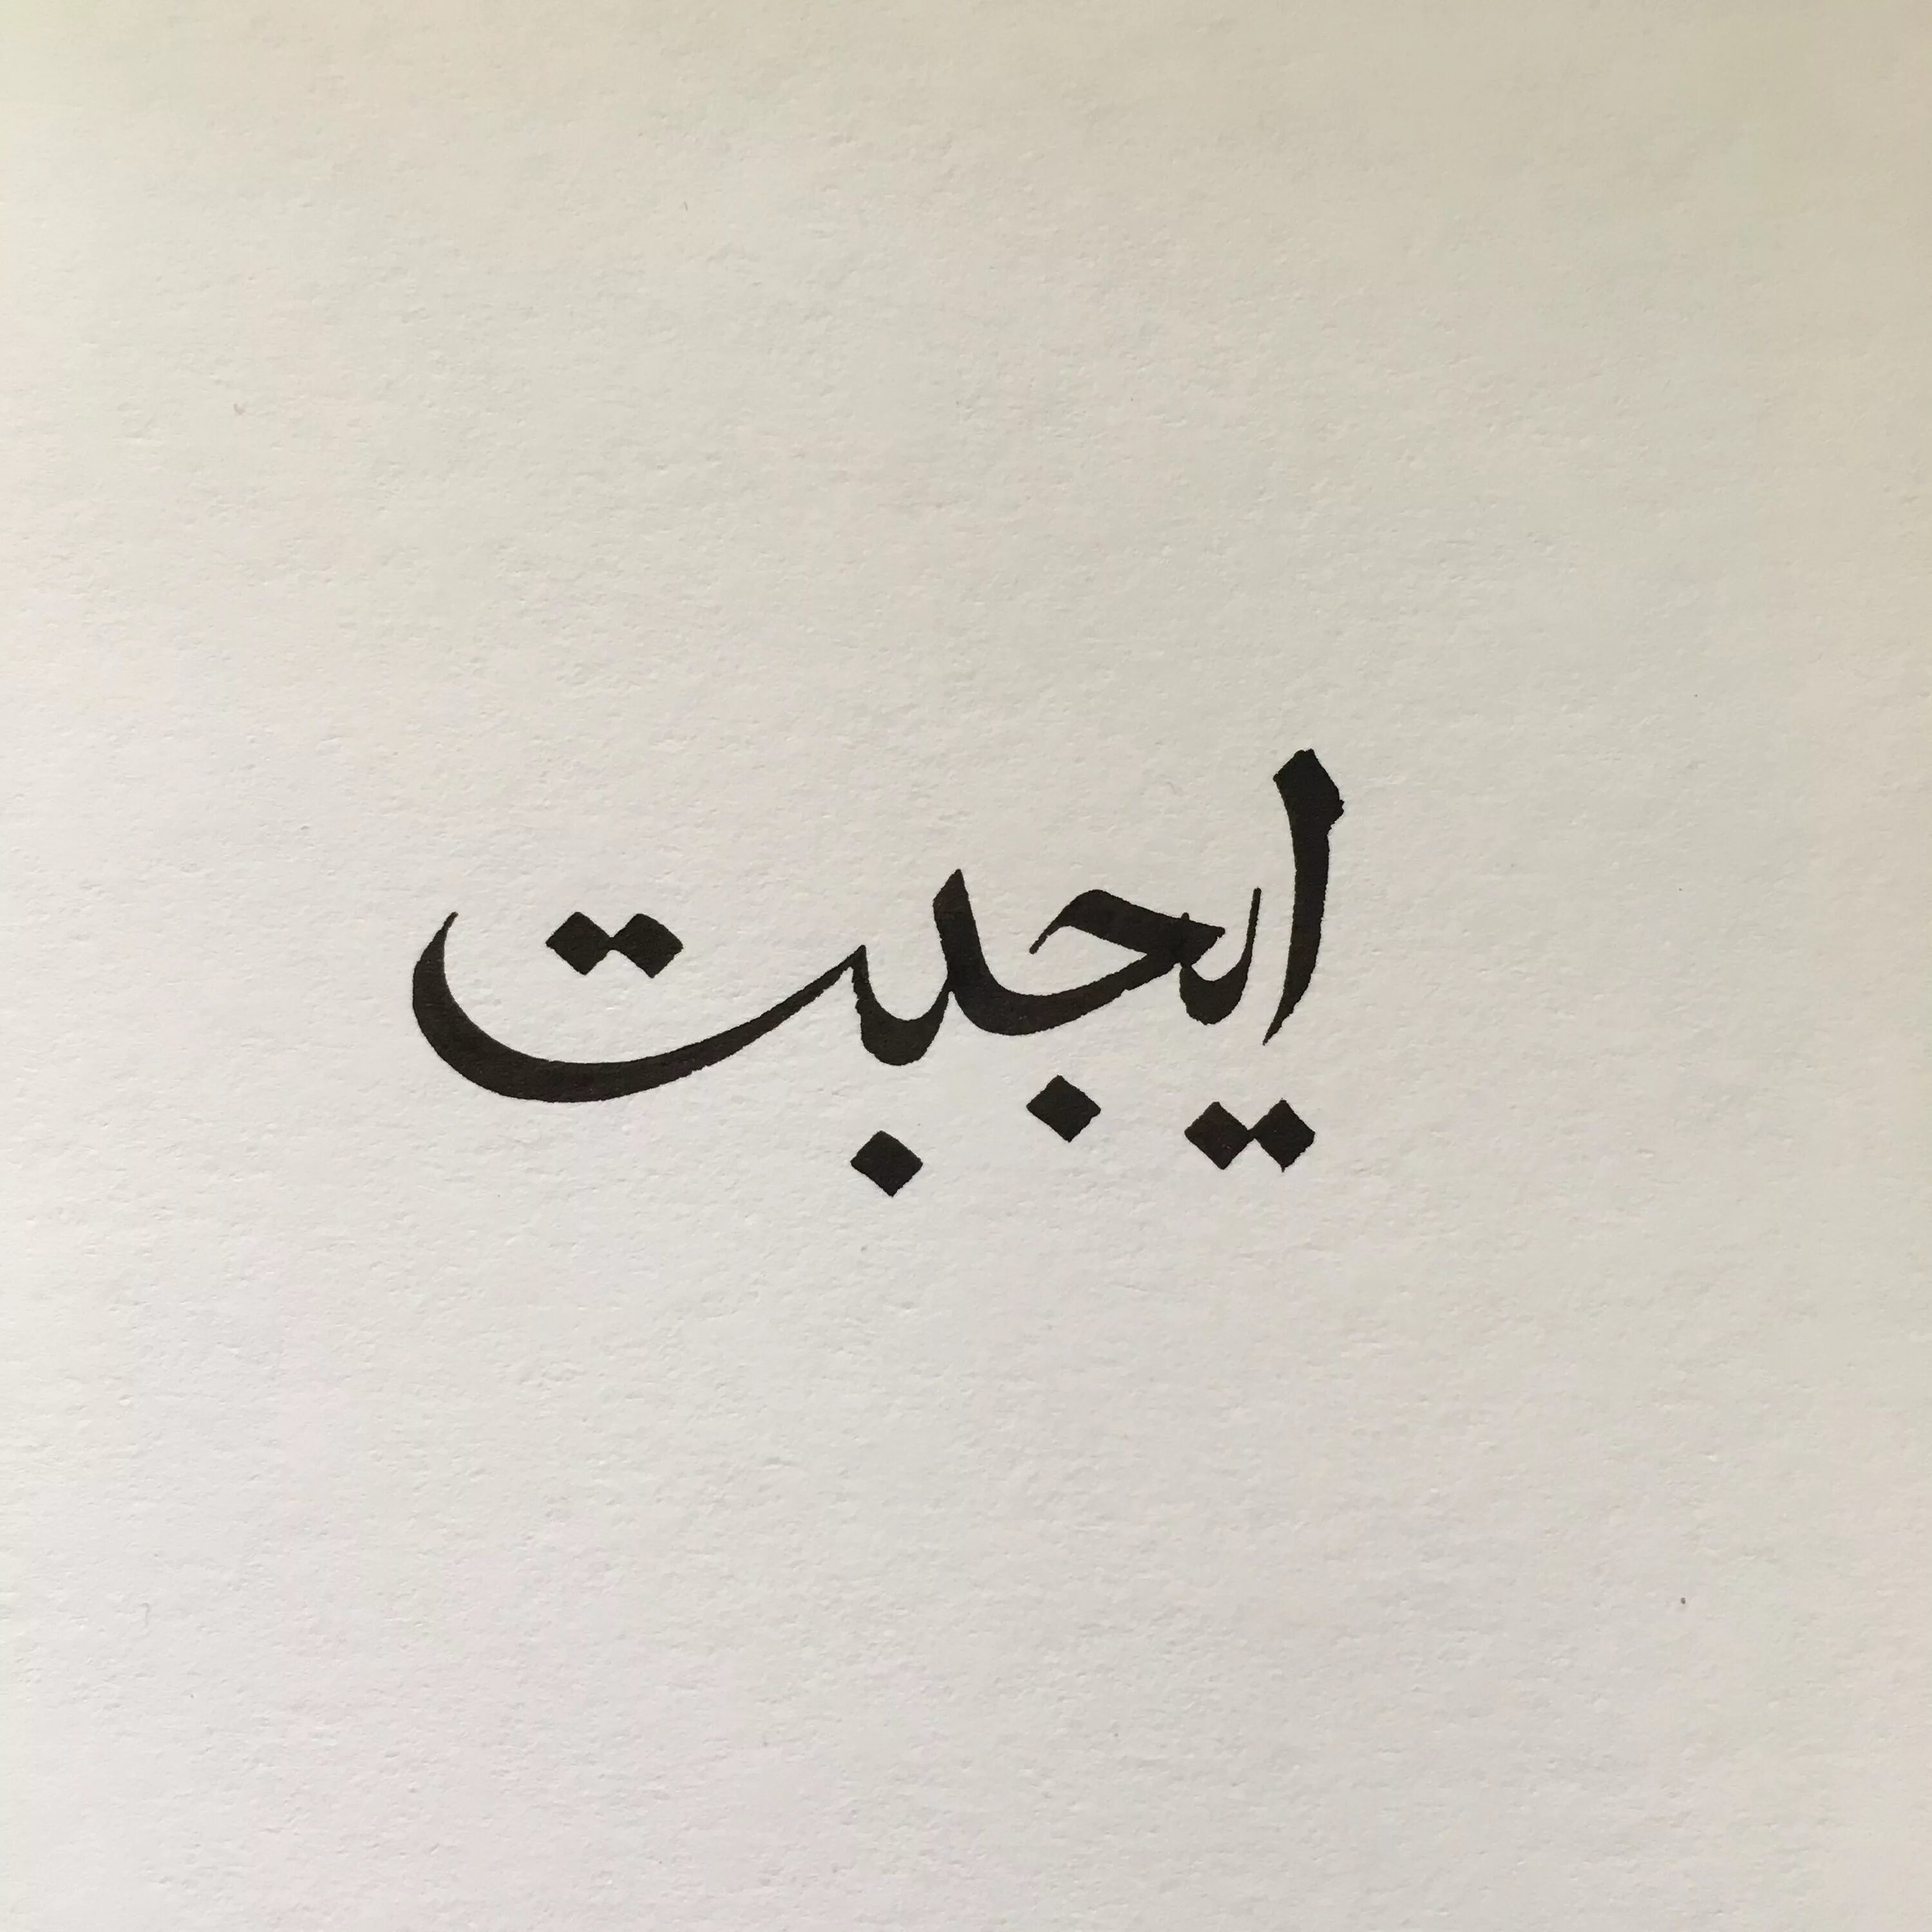 Любовь на арабском. Арабские надписи. Арабские иероглифы. Арабские рисунки. Пожалуйста на арабском